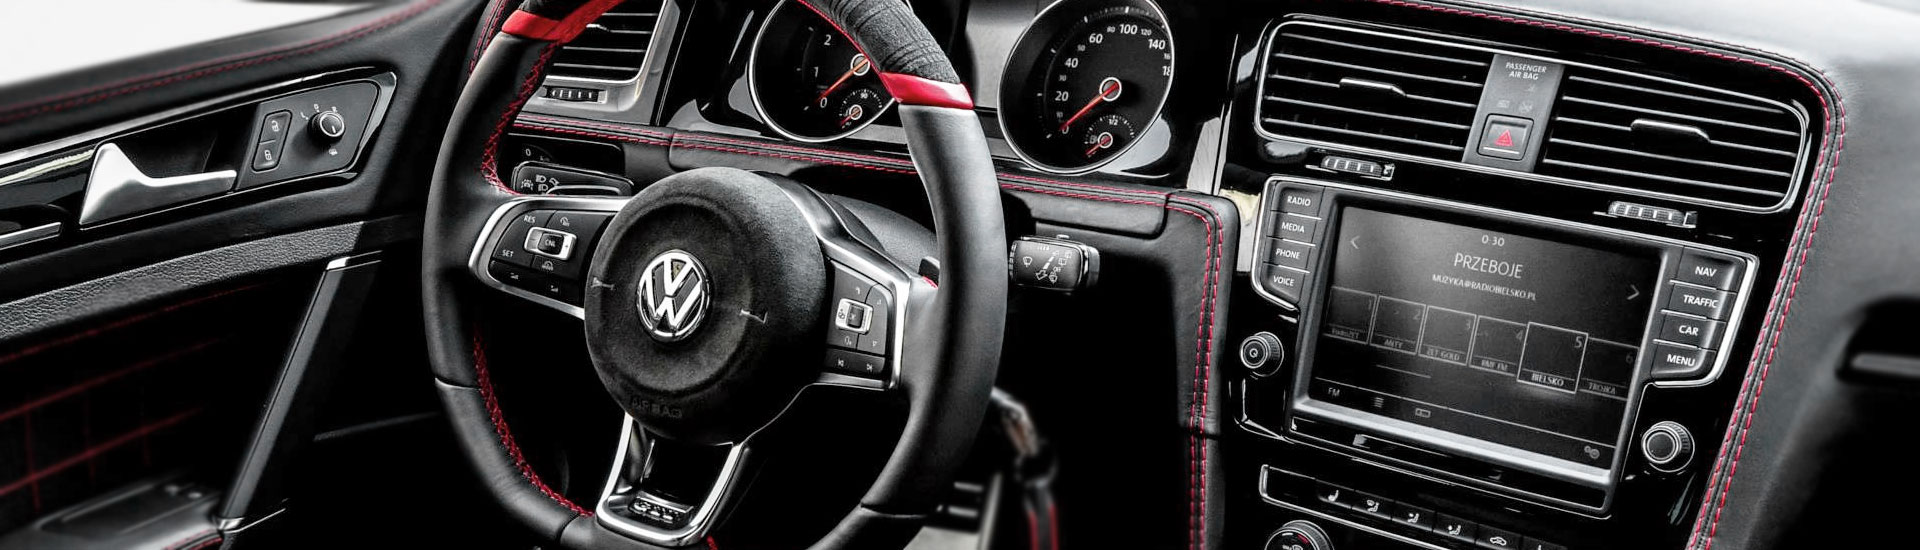 Volkswagen GTI Custom Dash Kits